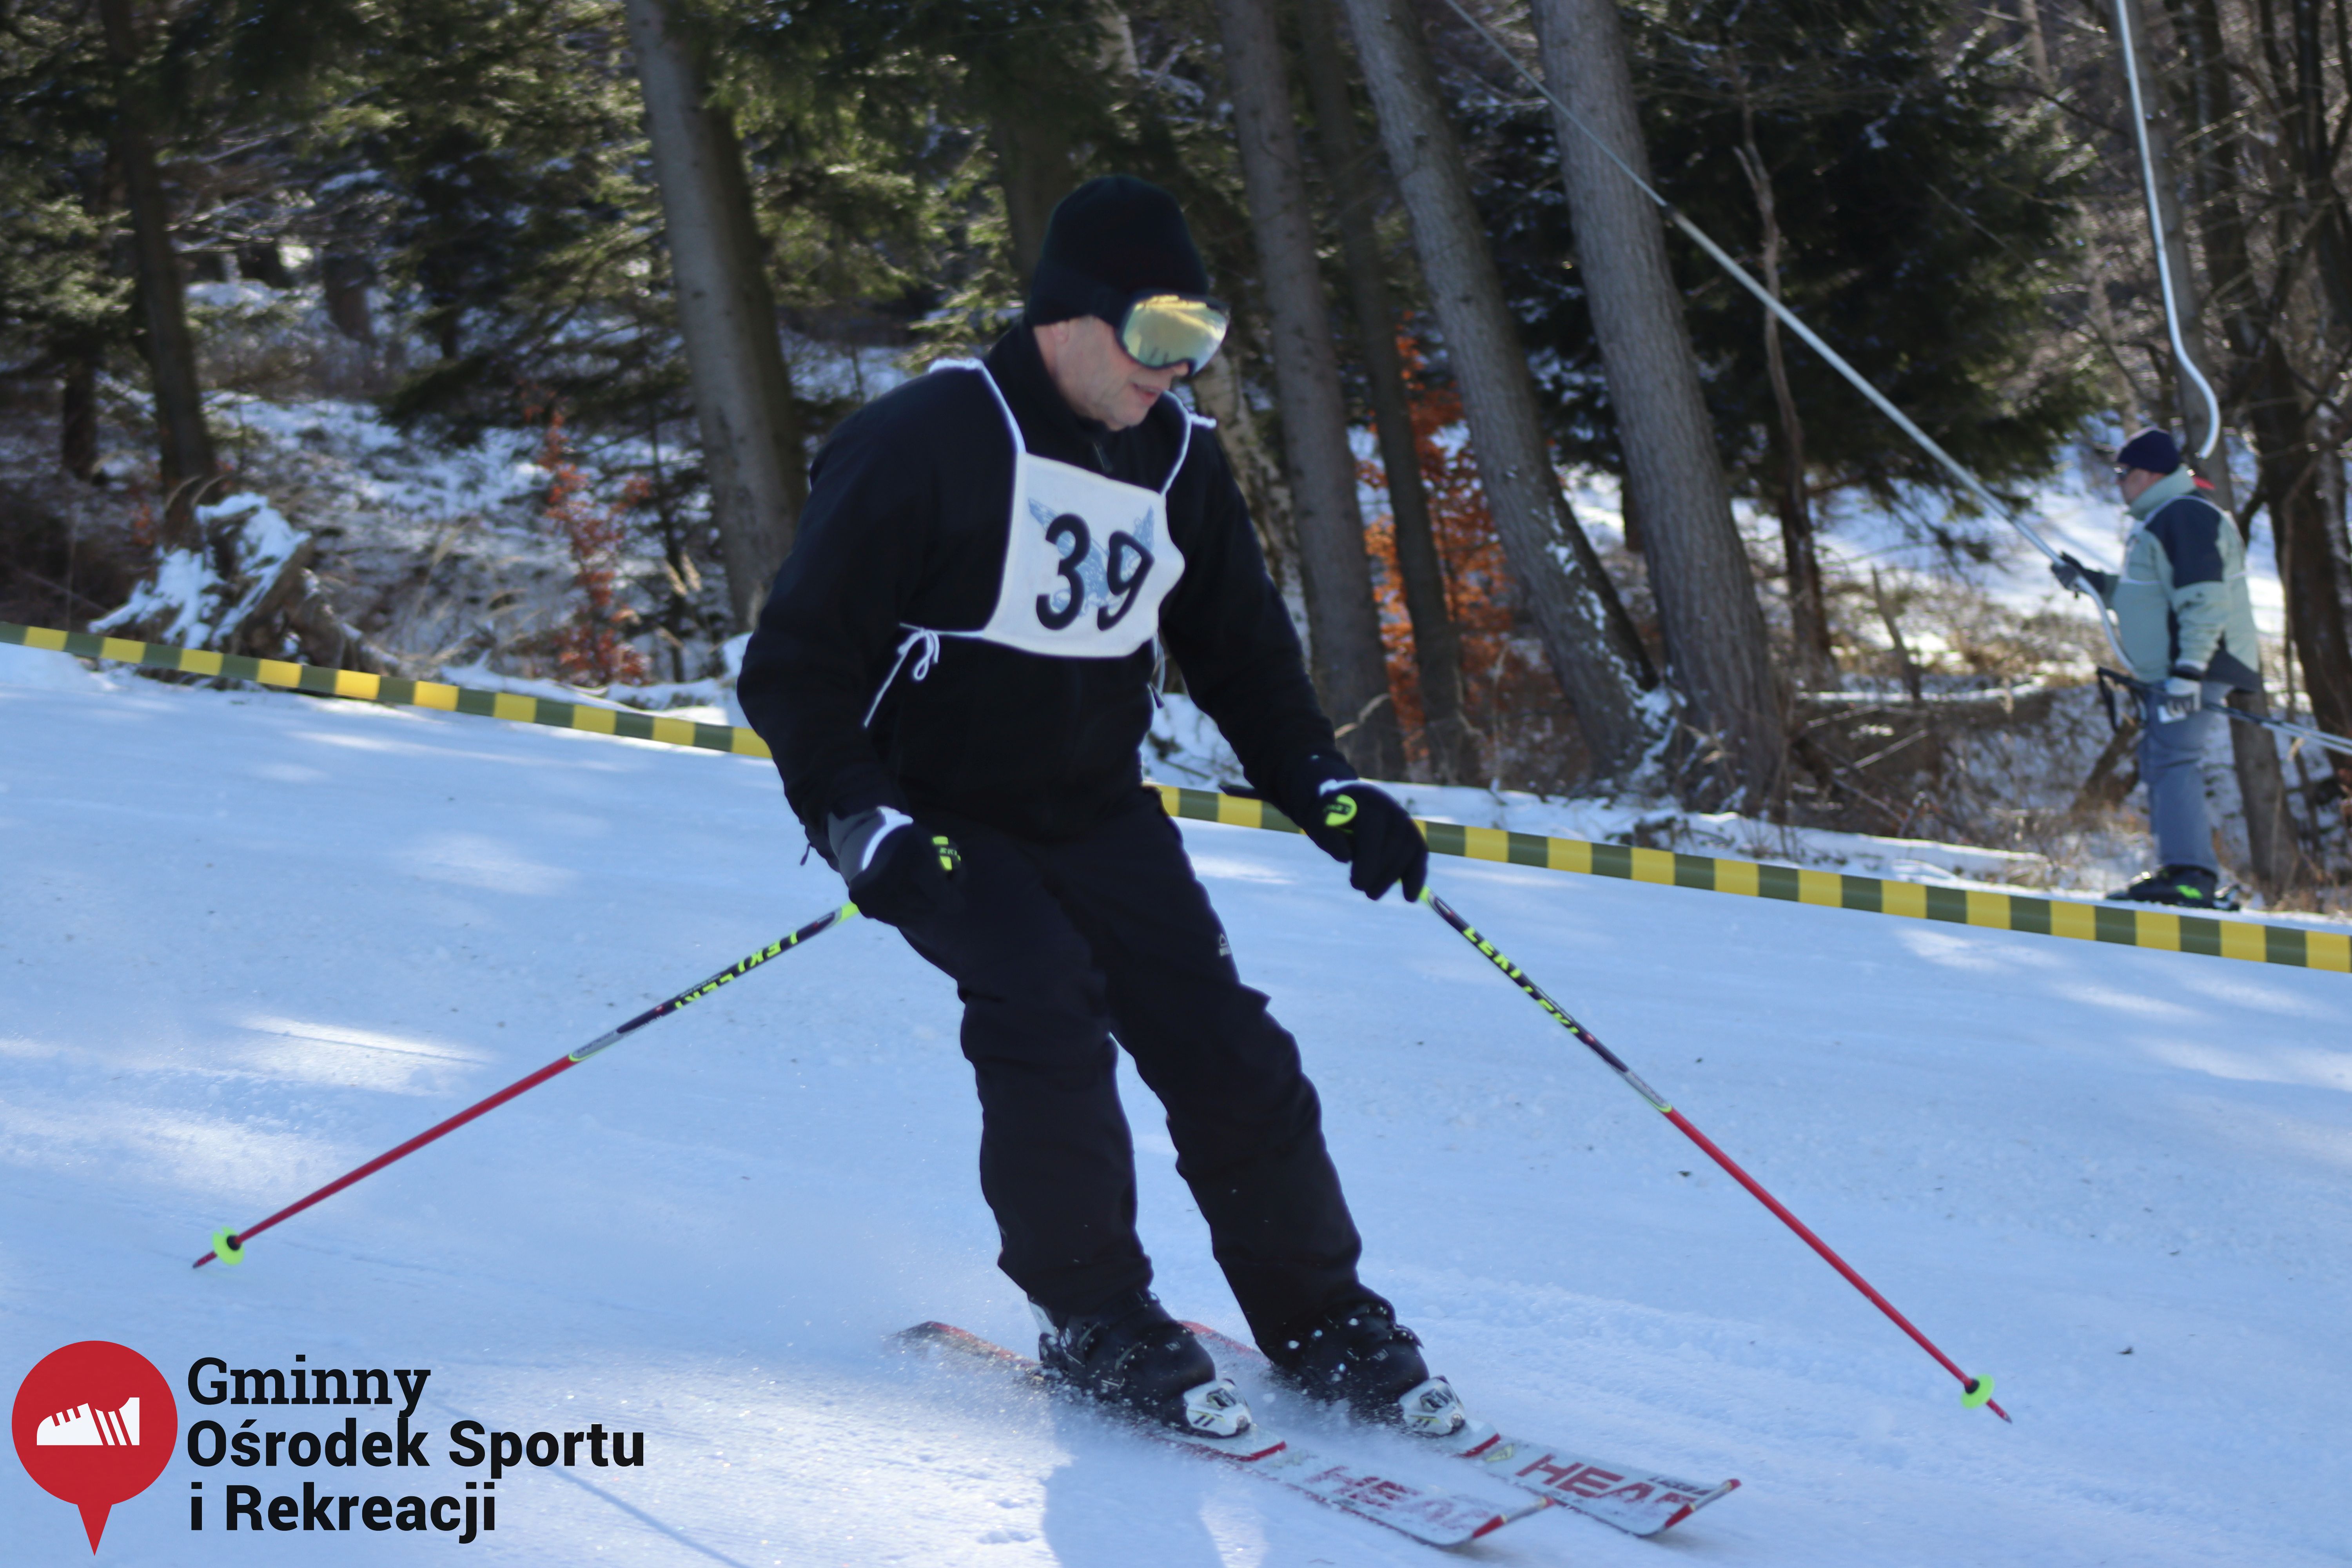 2022.02.12 - 18. Mistrzostwa Gminy Woszakowice w narciarstwie060.jpg - 1,49 MB